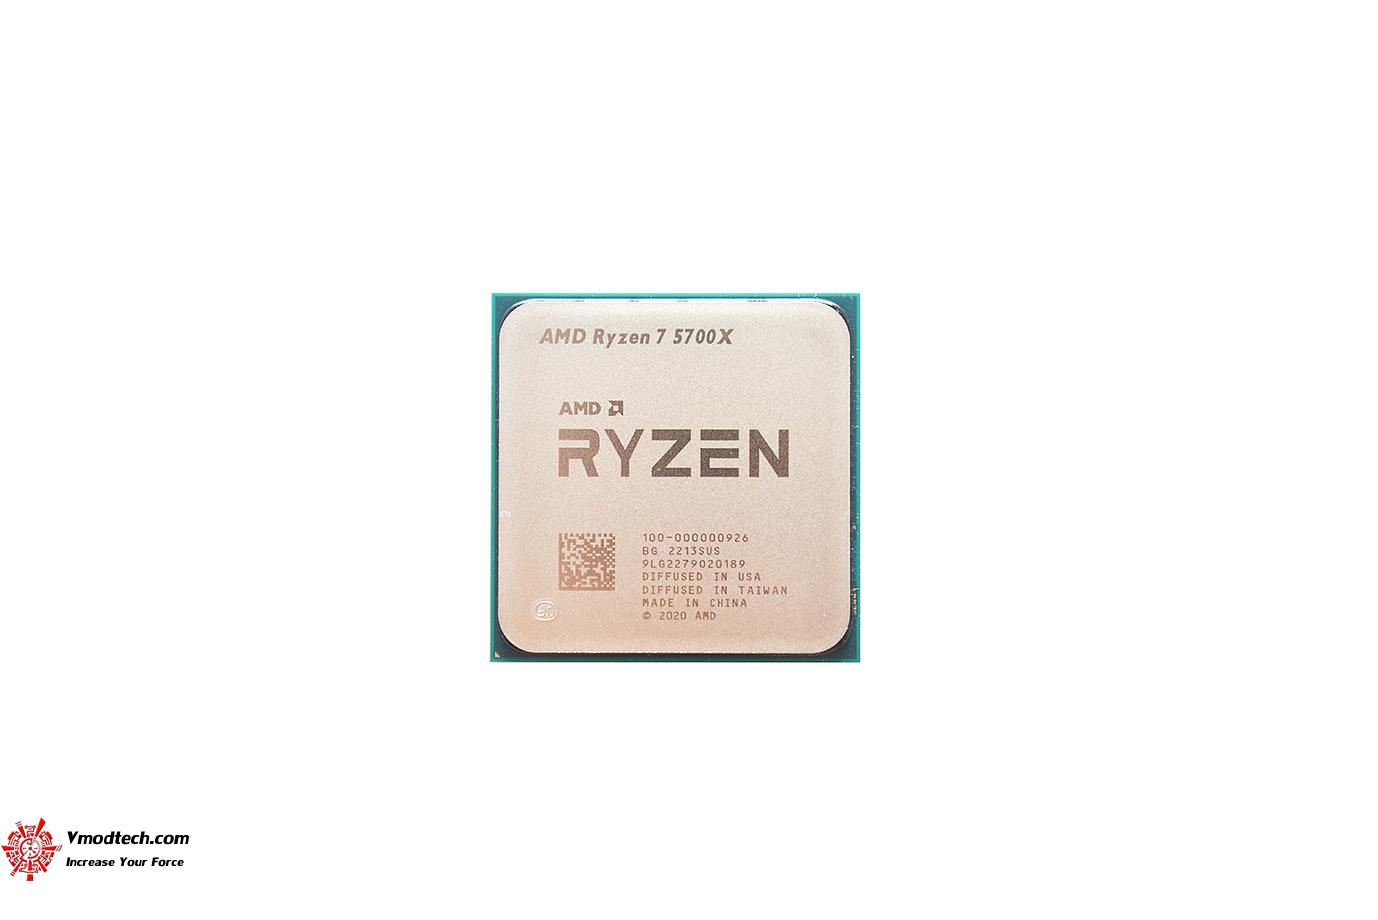 dsc 4732 AMD RYZEN 7 5700X PROCESSOR REVIEW